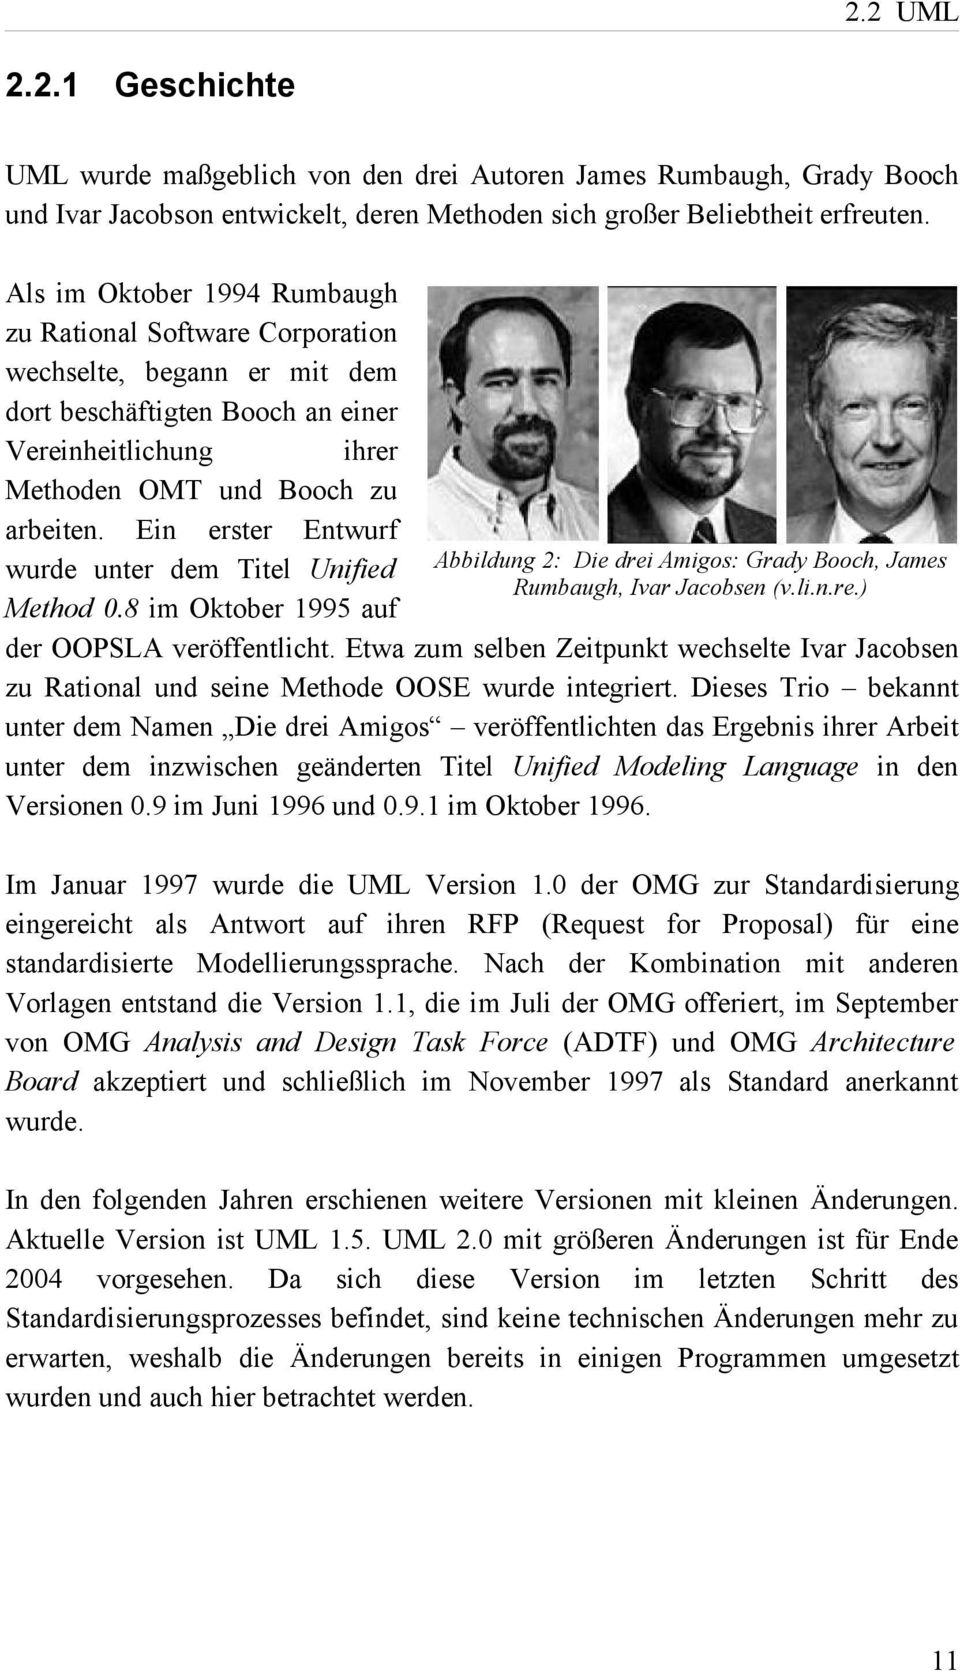 Ein erster Entwurf wurde unter dem Titel Unified Abbildung 2: Die drei Amigos: Grady Booch, James Rumbaugh, Ivar Jacobsen (v.li.n.re.) Method 0.8 im Oktober 1995 auf der OOPSLA veröffentlicht.